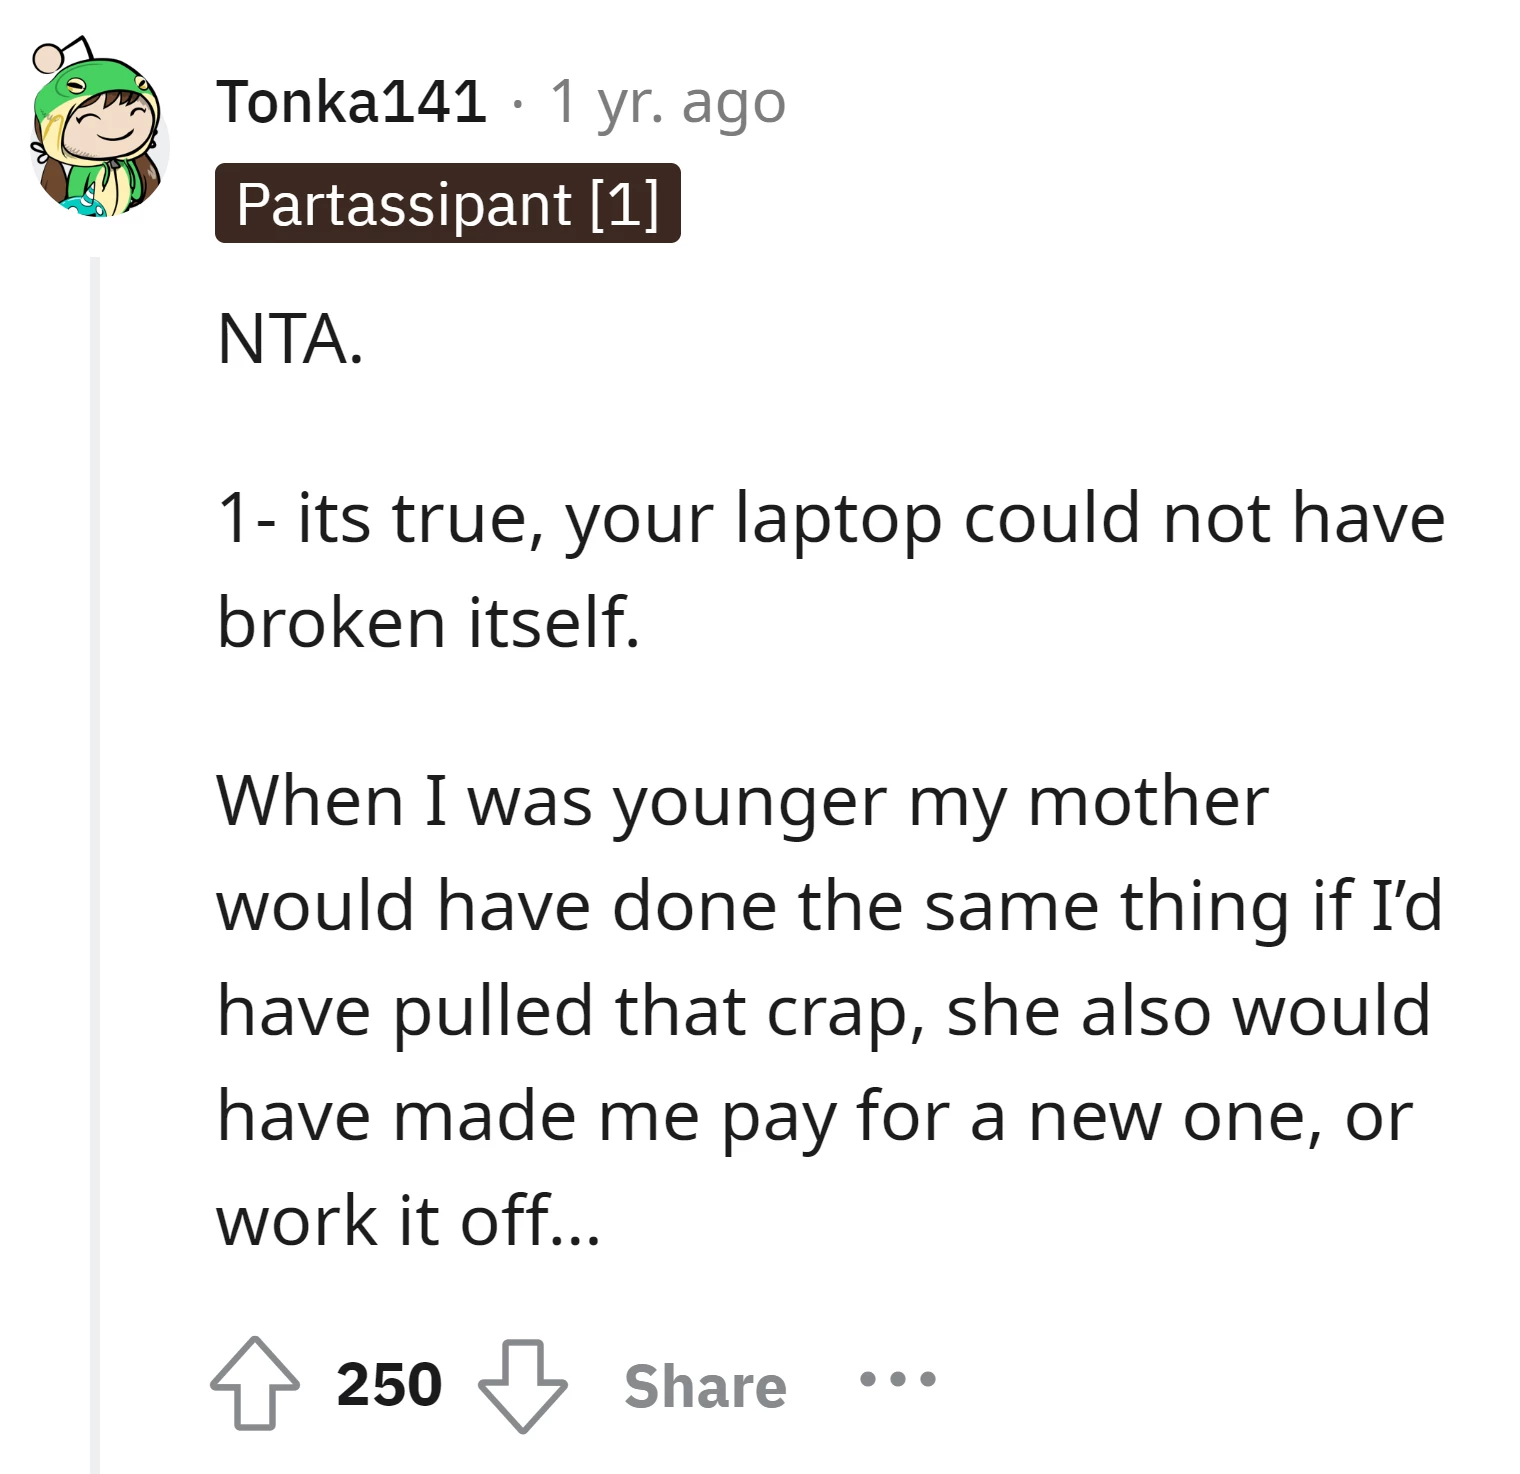 A laptop can't break itself